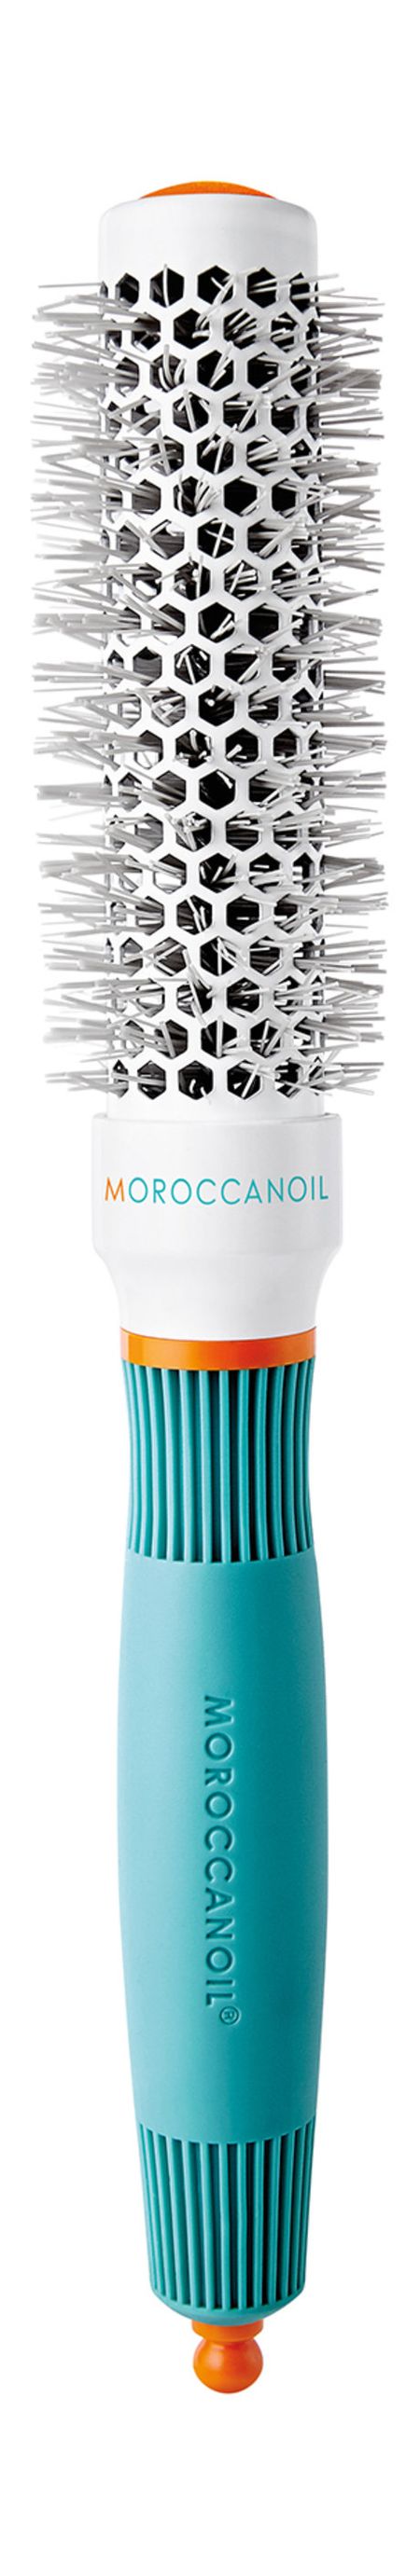 Moroccanoil Brush Ceramic+ION 25